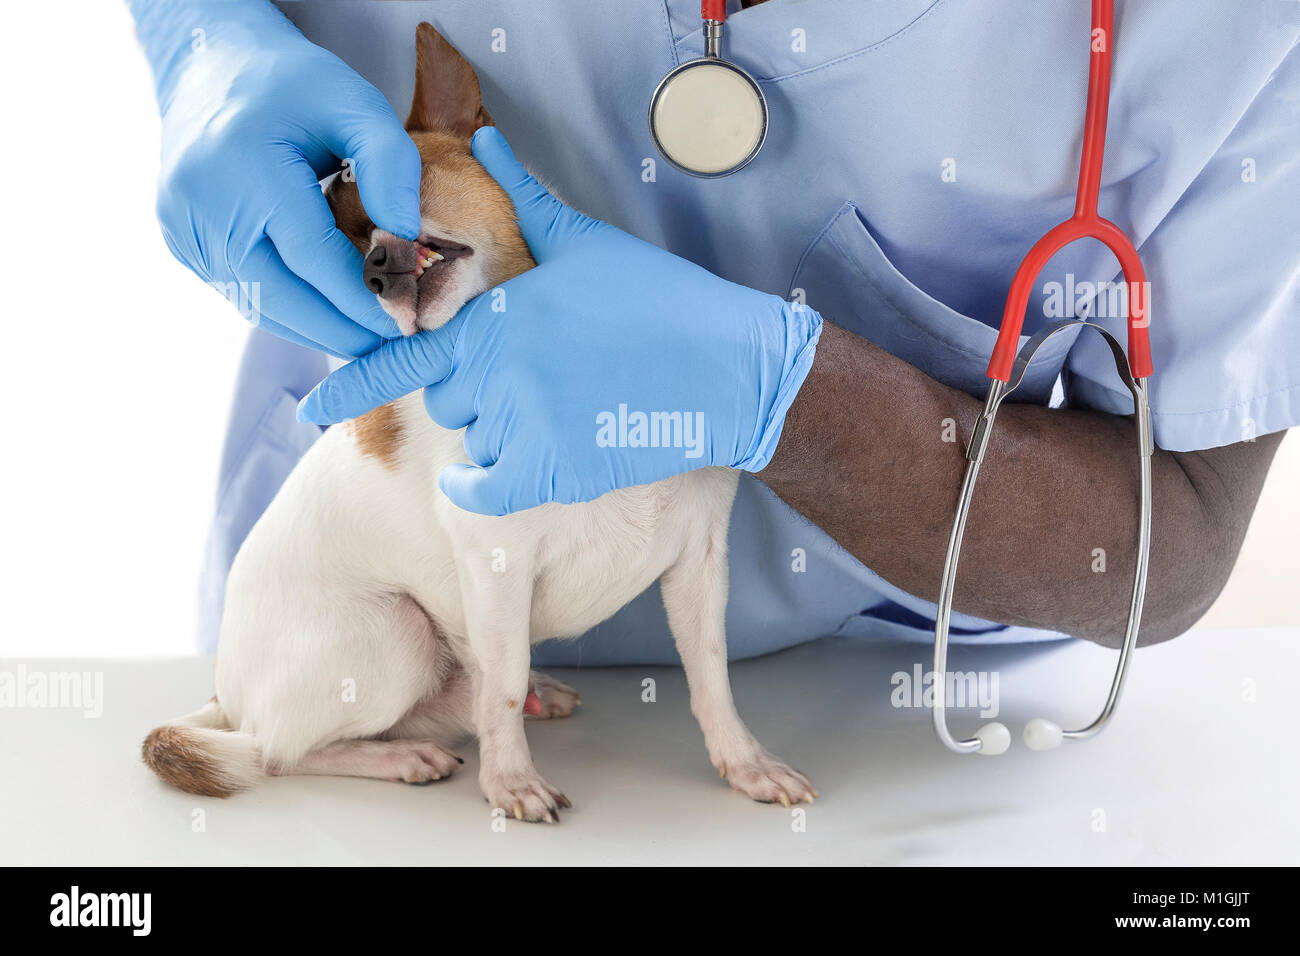 Tierarzt überprüft, Zähne zu einem Hund - Tier- und PET-tierärztliche Betreuung Konzept Stockfoto